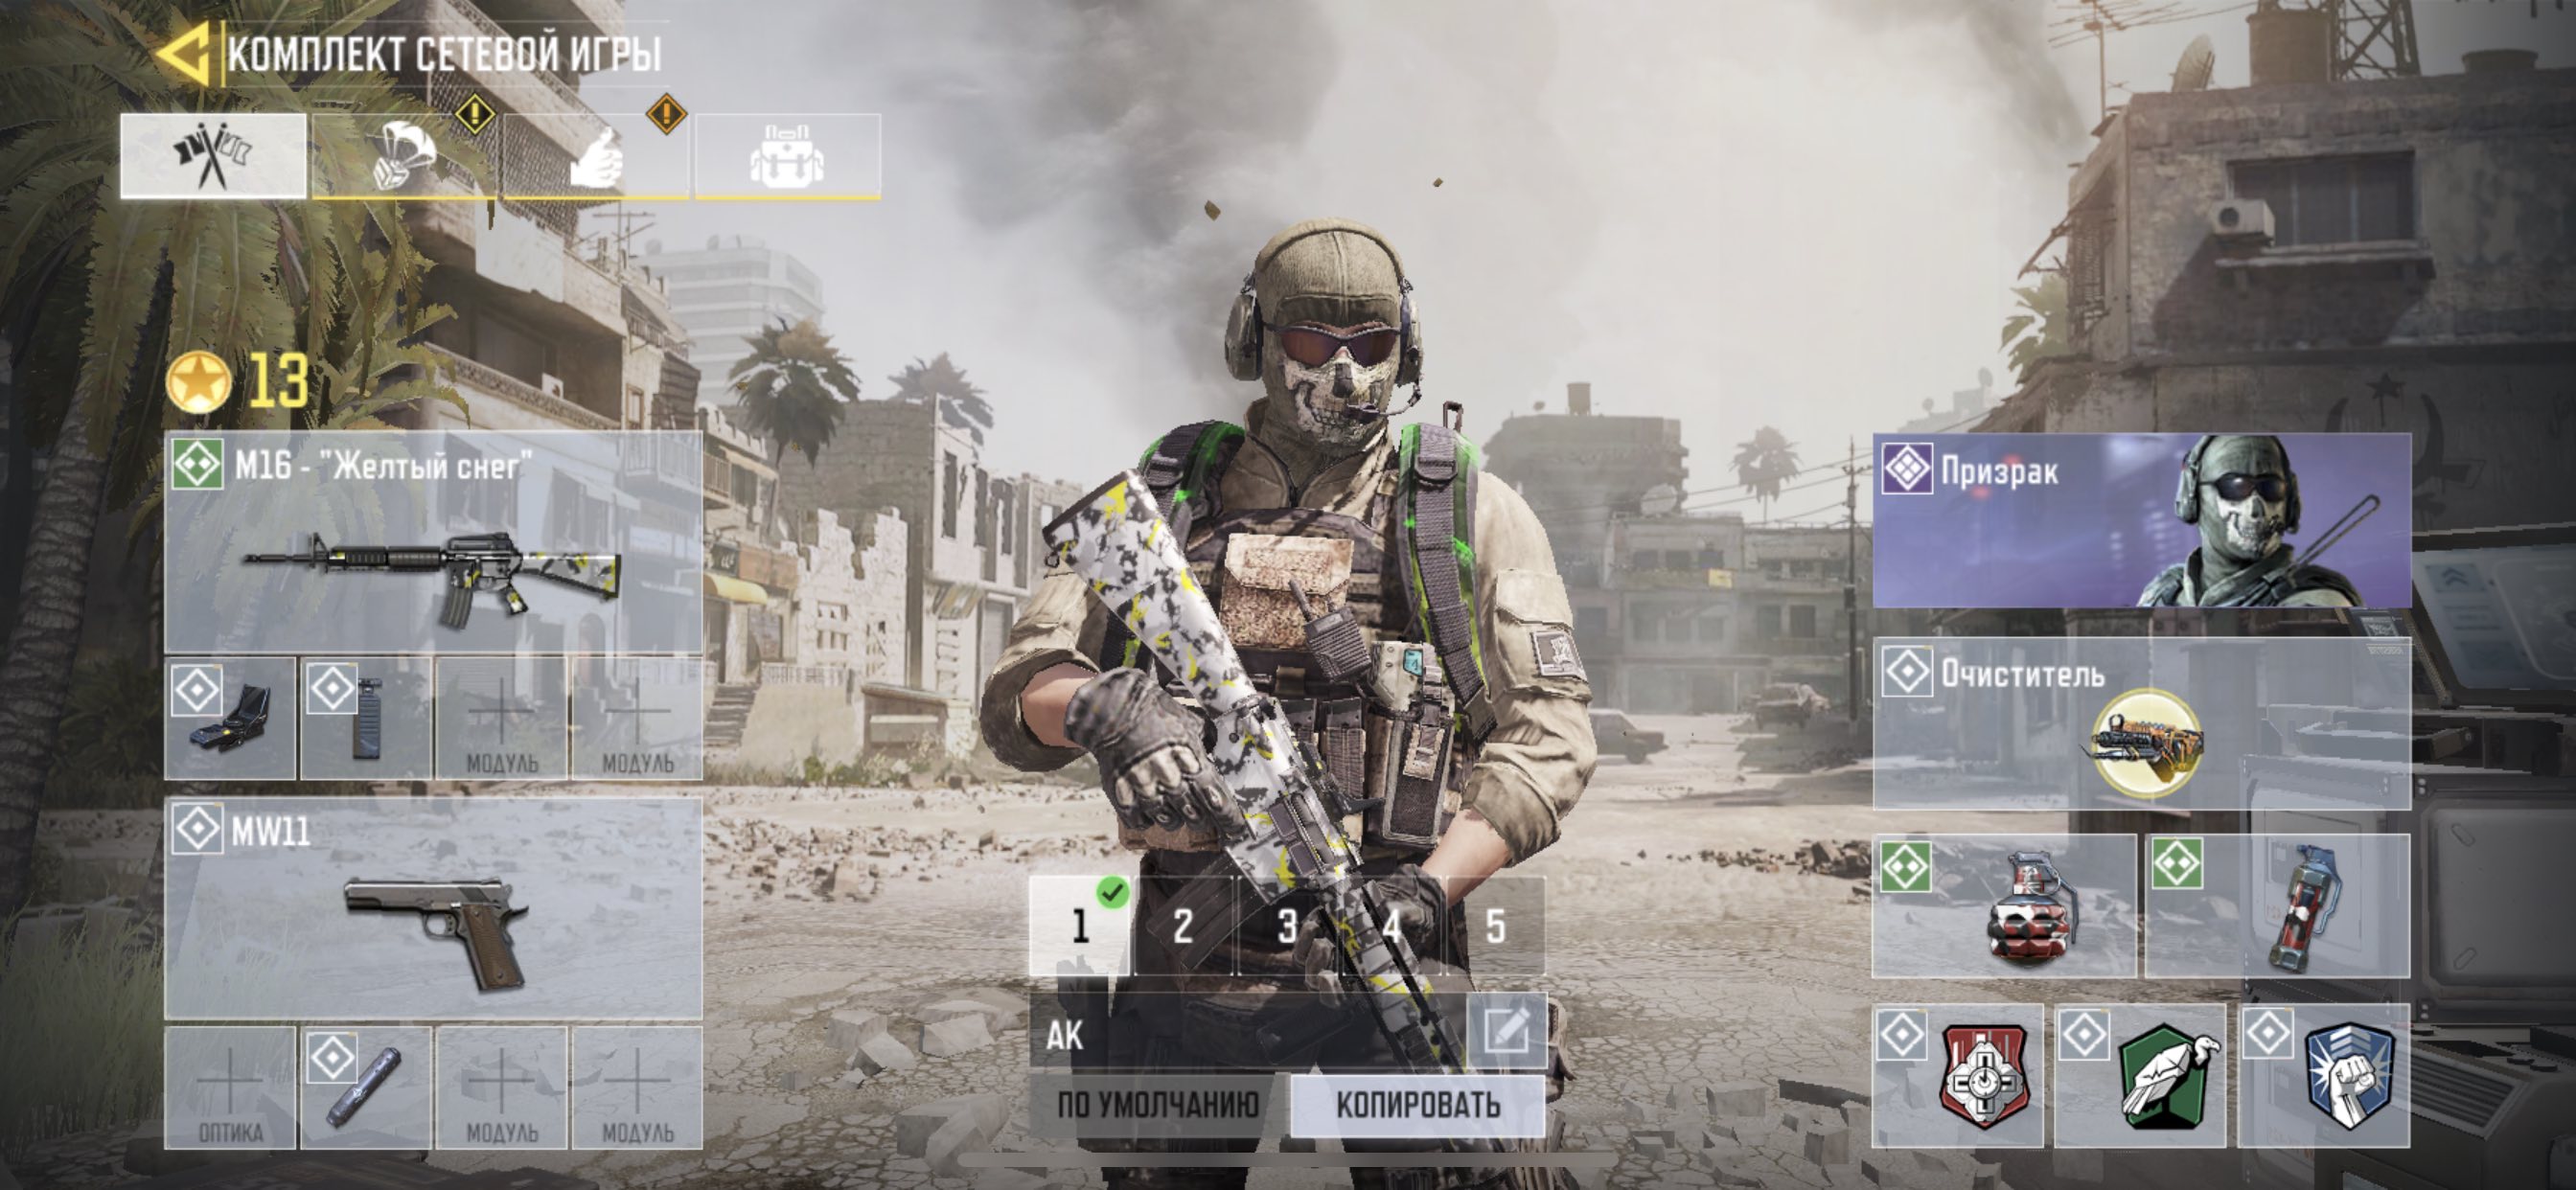 Call of Duty Mobile режимы - королевская битва, командный бой и другие.